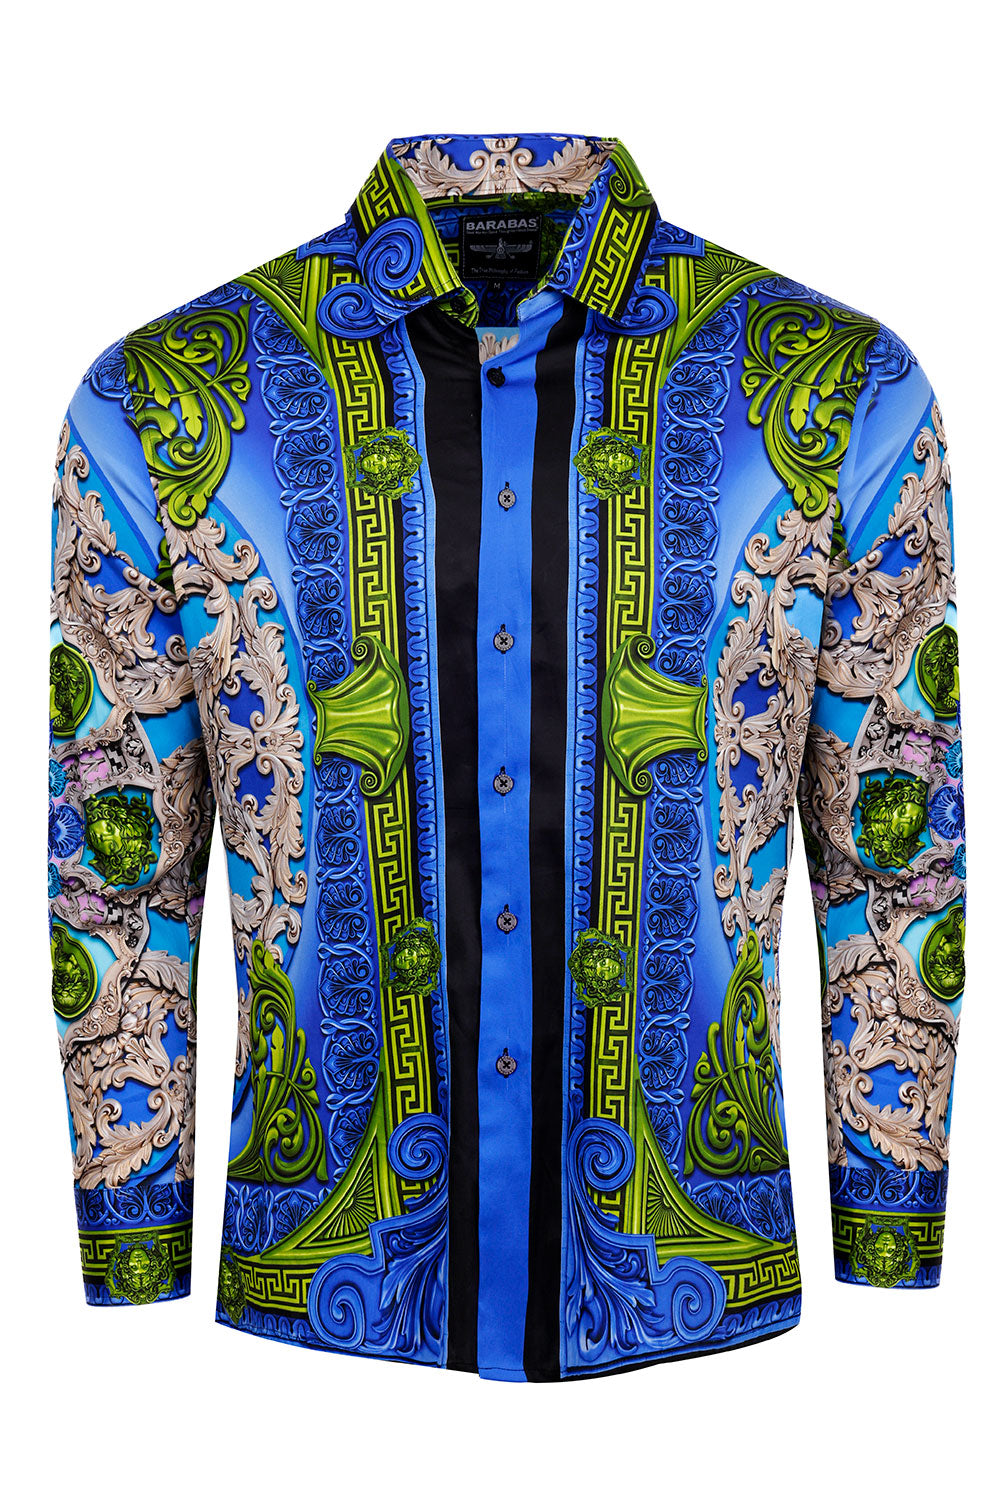 BARABAS Men's Rhinestone Medusa Floral Long Sleeve Shirts 3SPR416 Royal